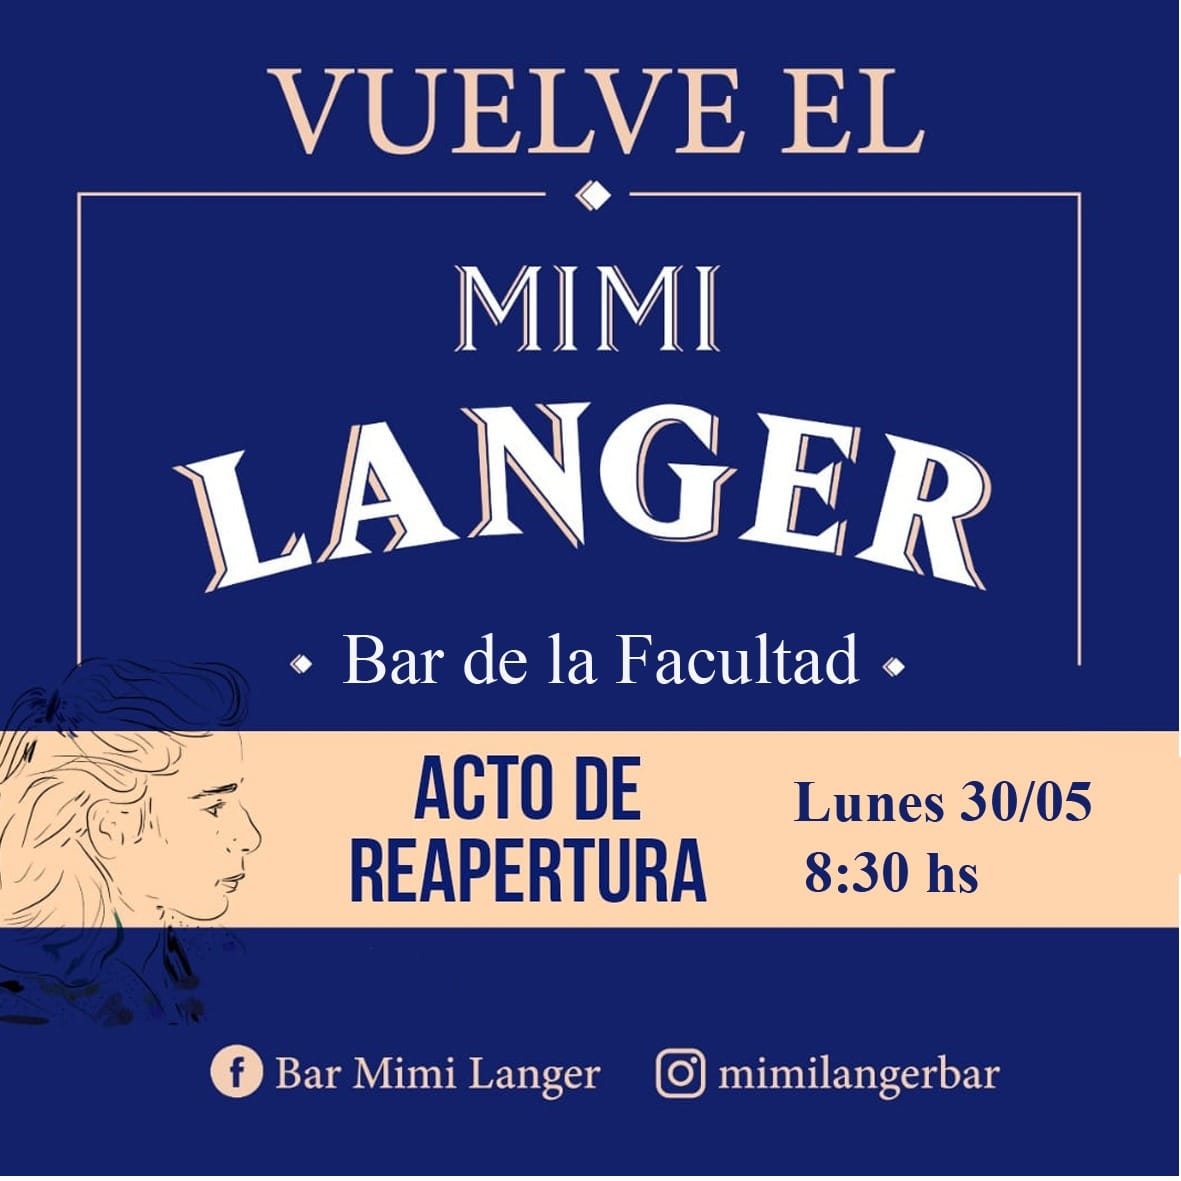 Acto de reapertura del Bar de la Facultad: Vuelve el Mimi Langer